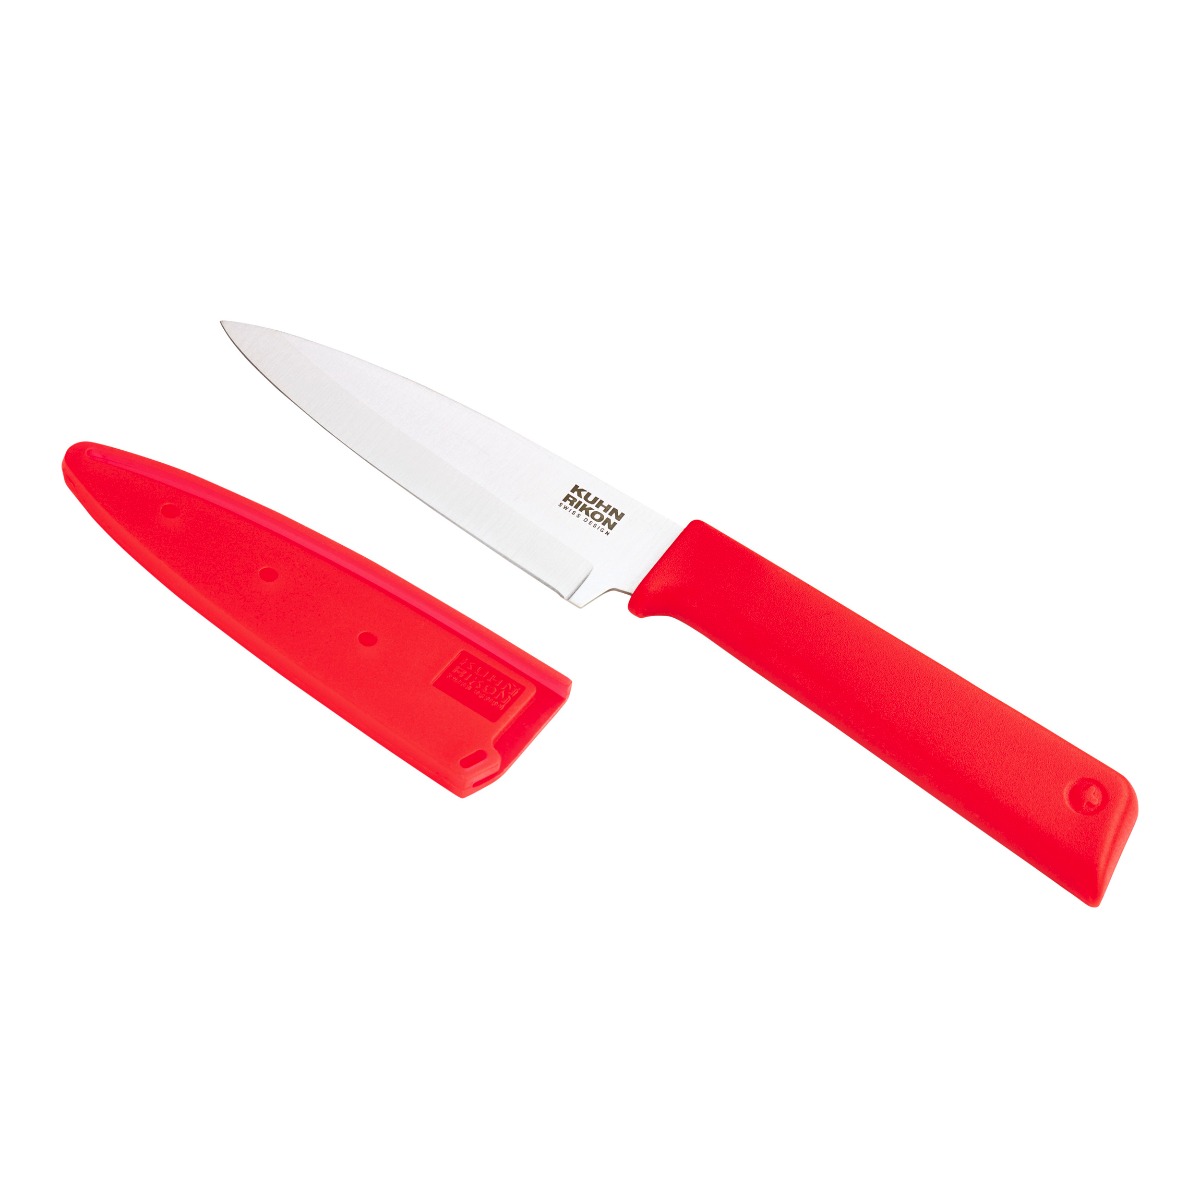 Kuhn Rikon - Colori(r)+ Classic paring knife Red